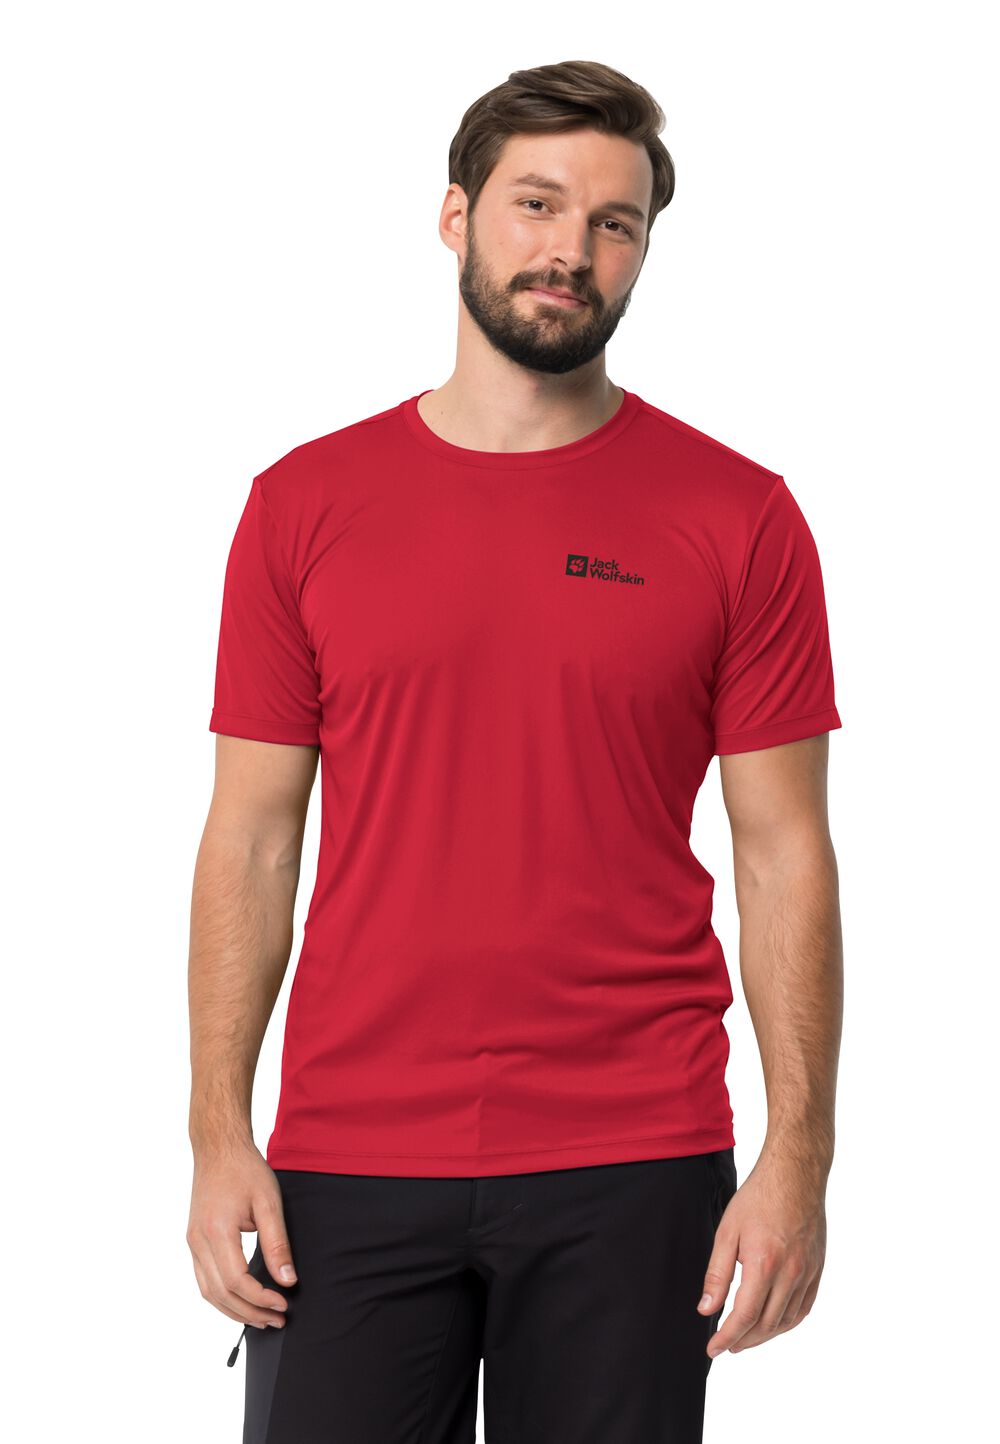 Jack Wolfskin Funktionsshirt Herren Tech T-Shirt Men S rot red glow von Jack Wolfskin